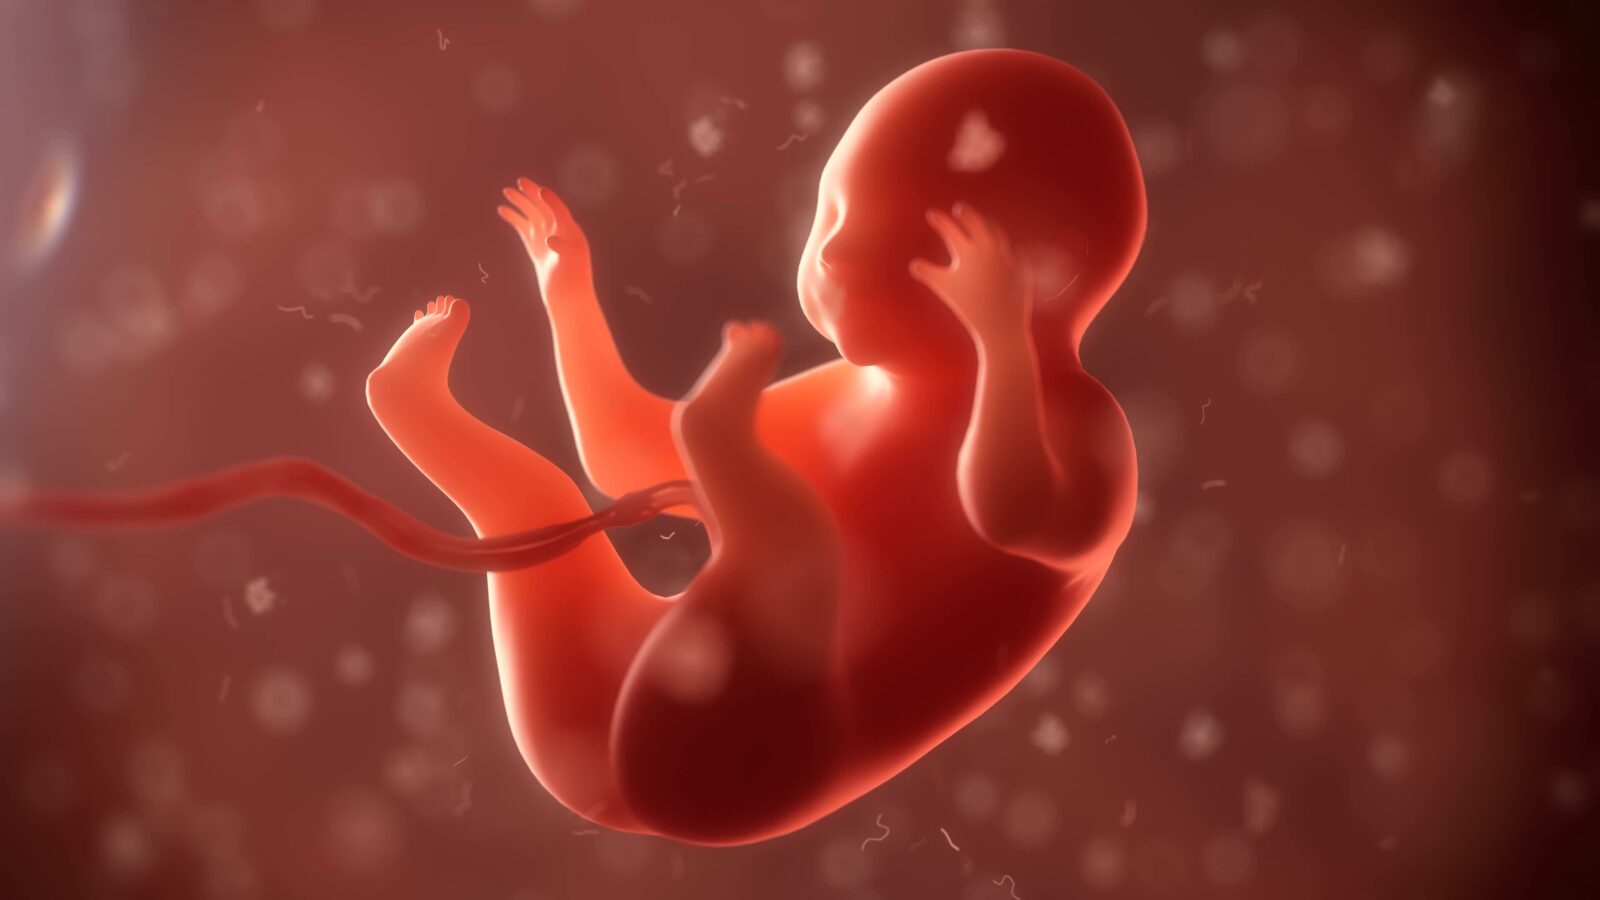 Mang thai tuần 1: Những thay đổi nhỏ của cơ thể cho biết bạn đã có tin vui